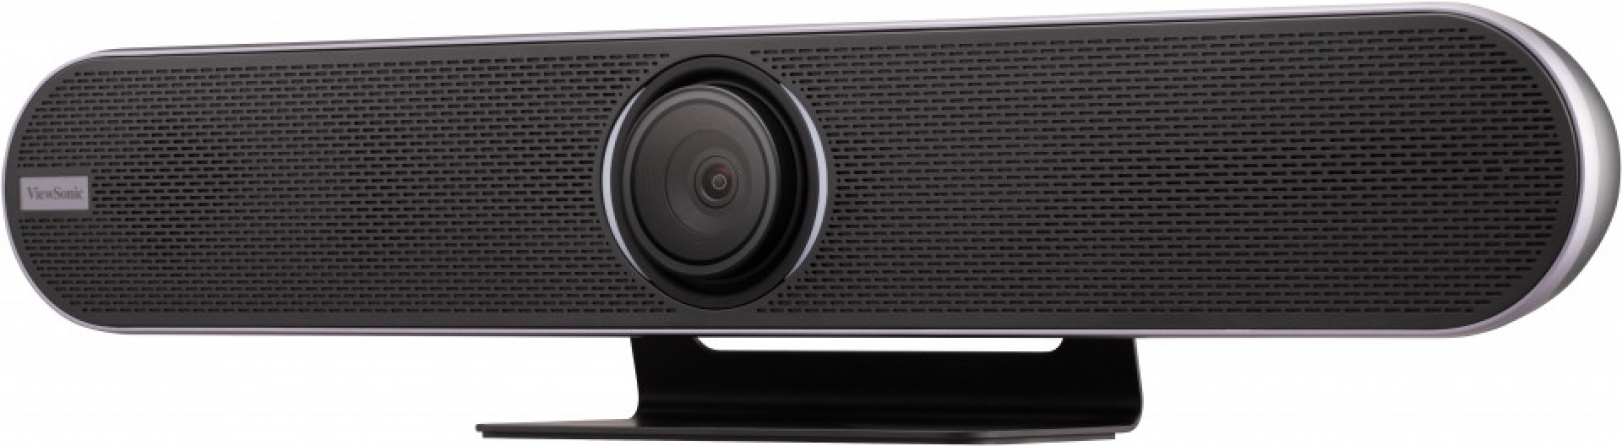 Videocamera professionale per videoconferenze ViewSonic Tribe VB-CAM-201 Ultra HD 4K